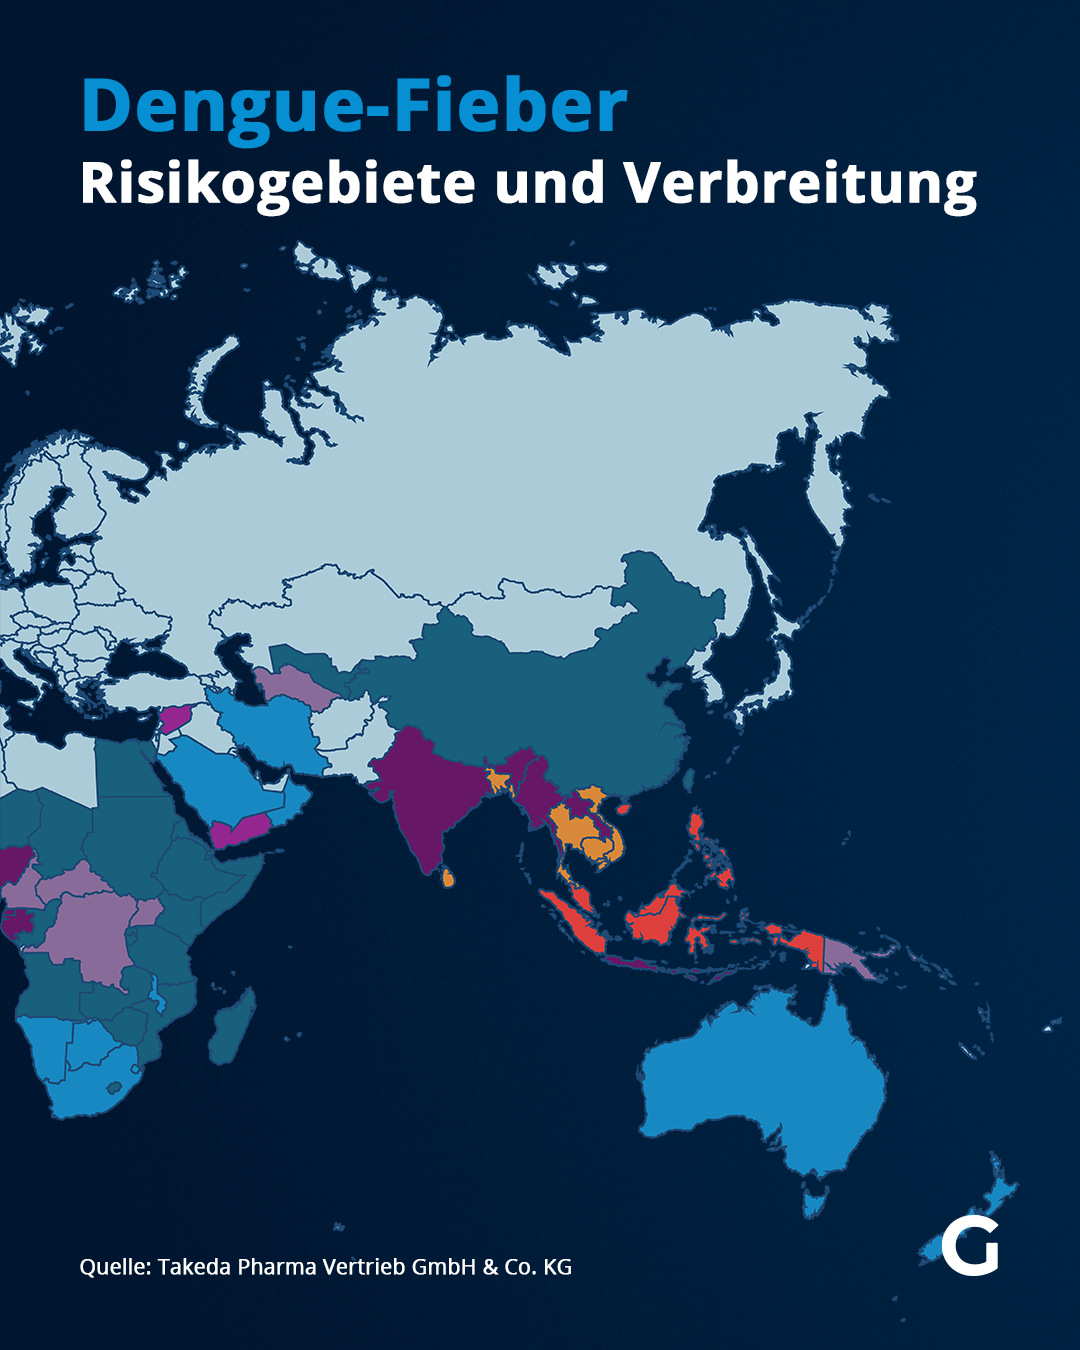 Denguefieber: Verbreitung und Risikogebiete